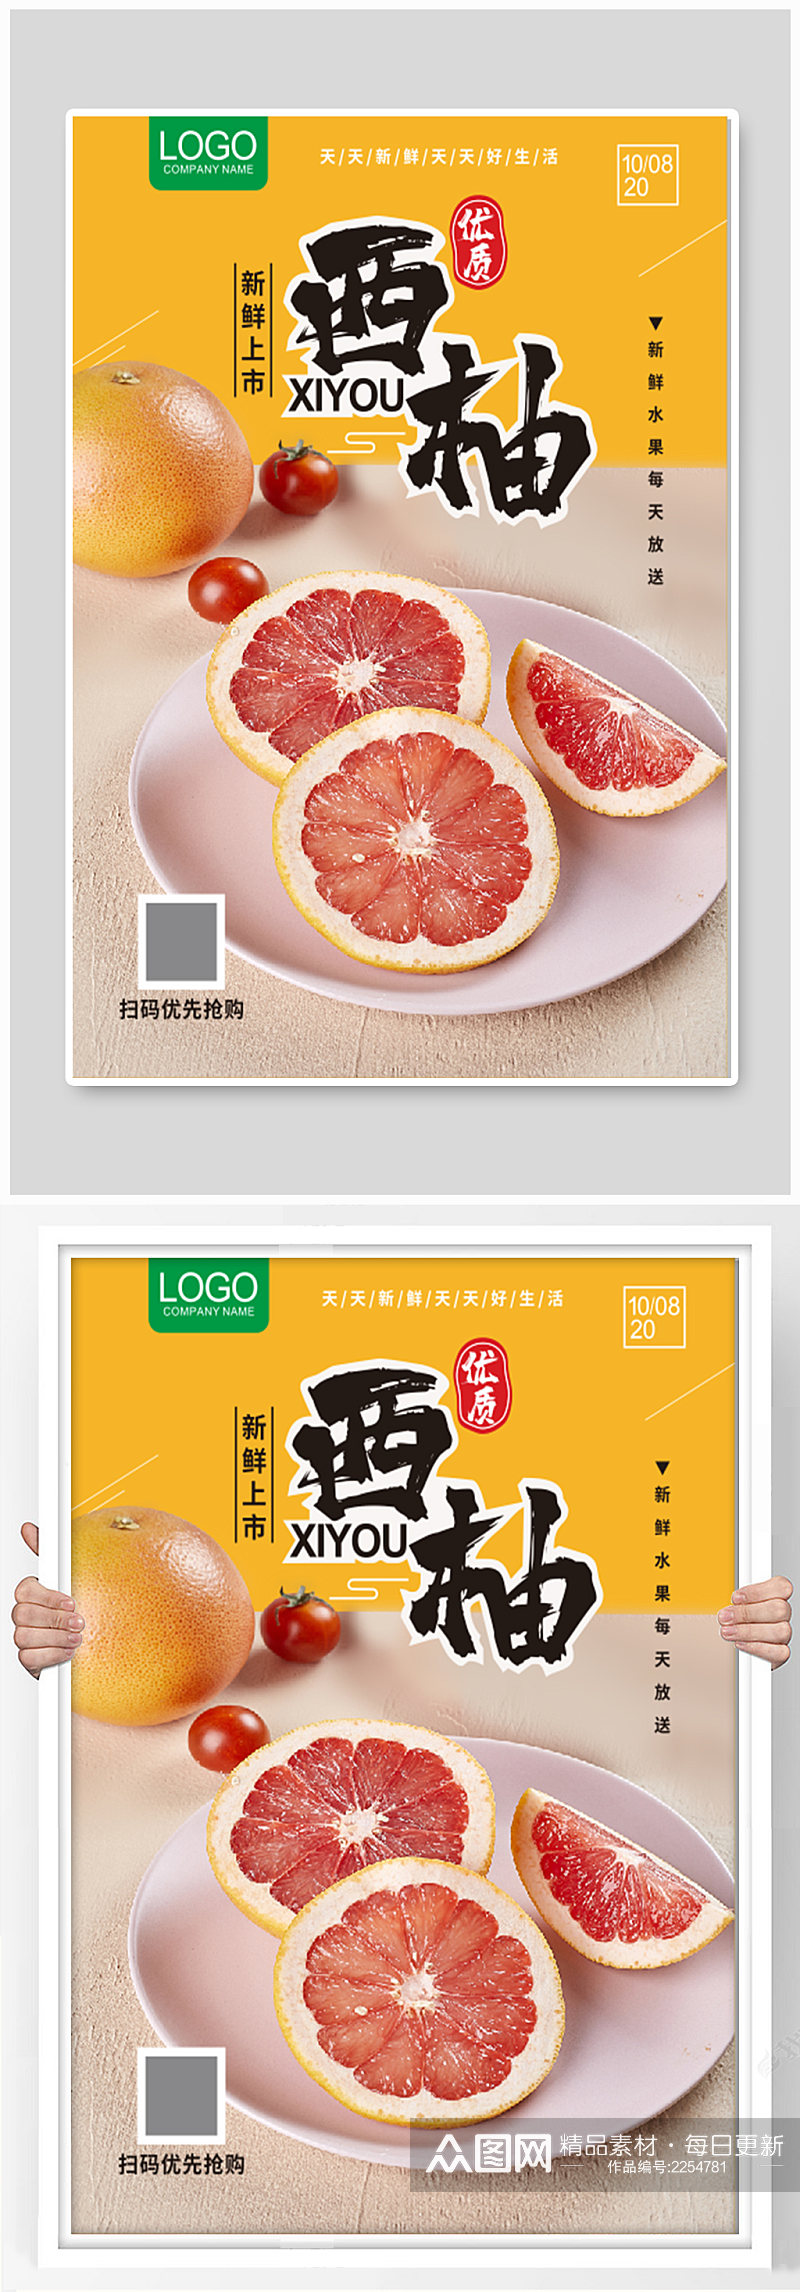 新鲜西柚上市宣传 柚子海报素材